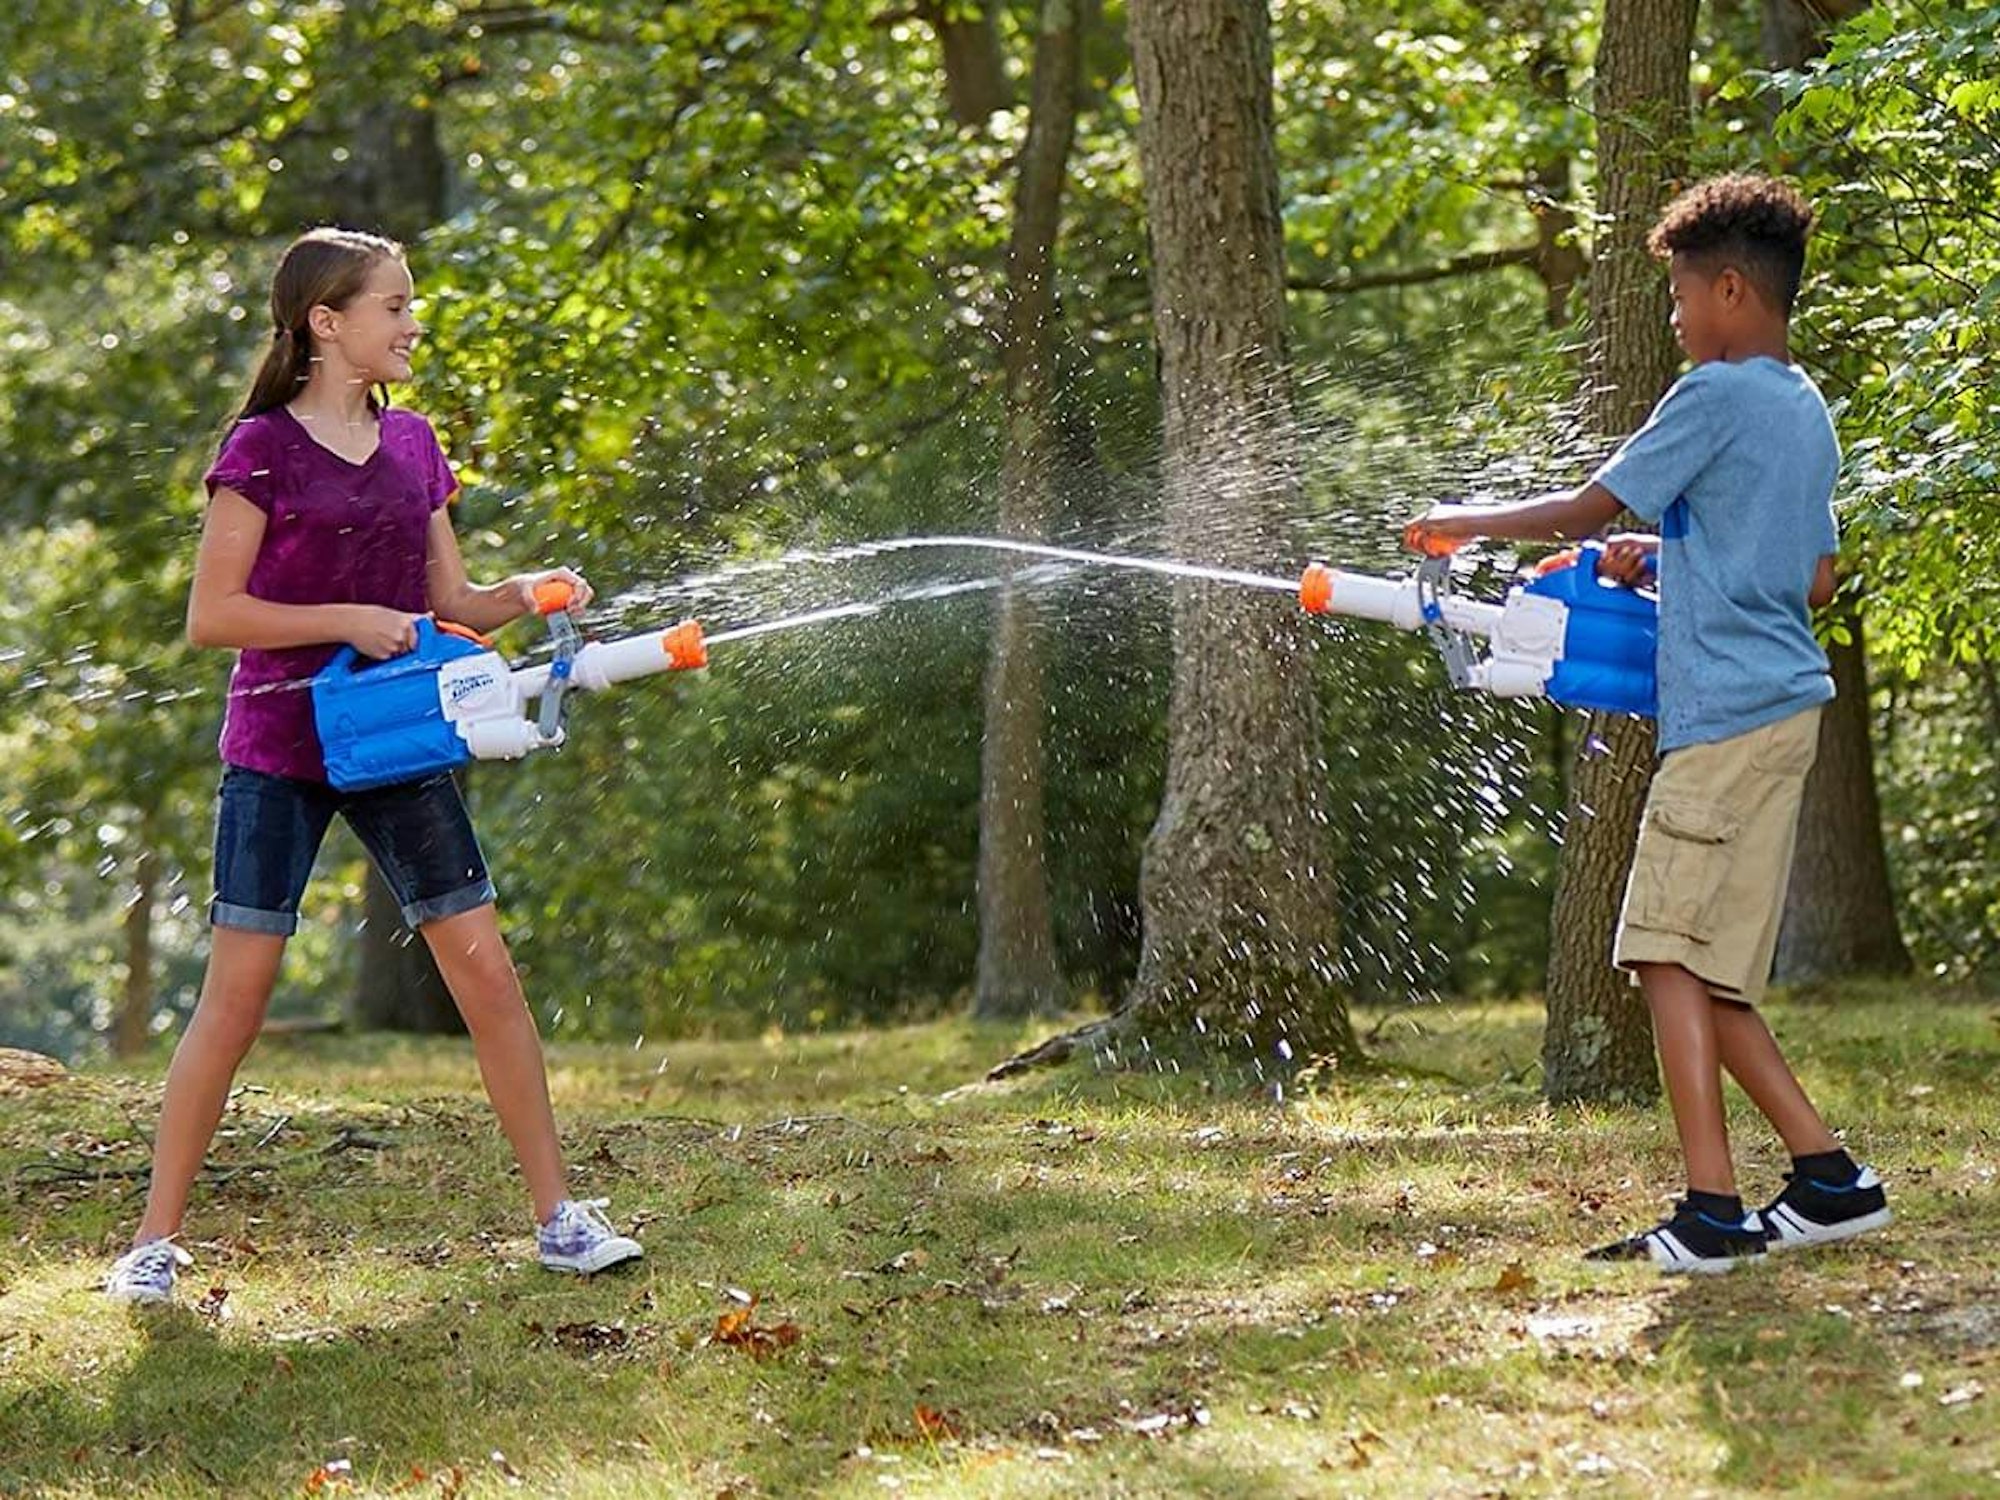 Wasserschlacht im Garten mit Super Soaker Wasserpistolen.